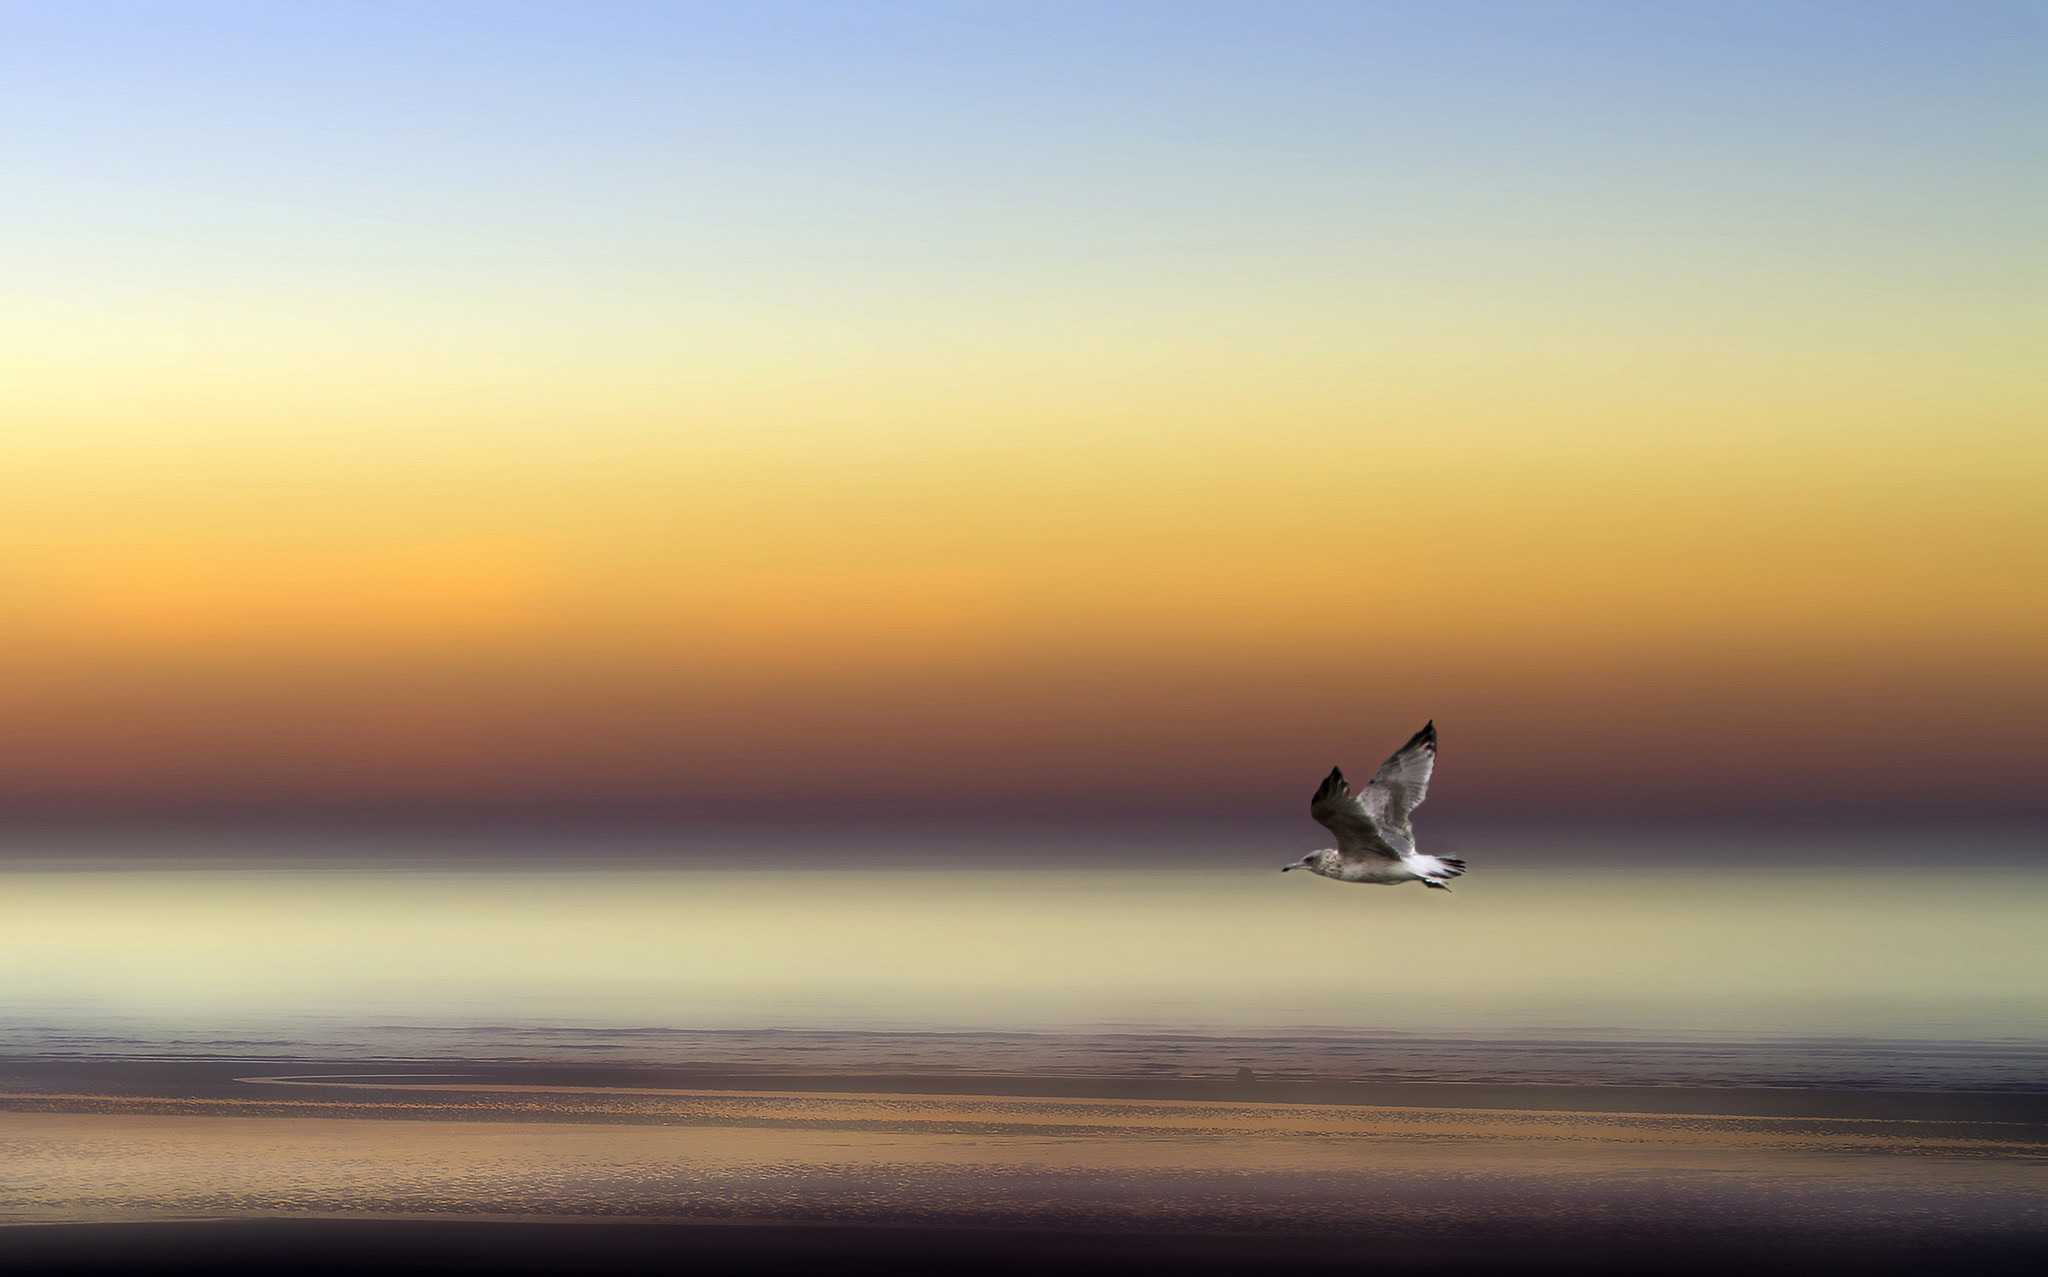 Птицы в небе. Заставка на экран компьютера летящего над морем дракона. Чайка на берегу моря стихи. Лазурная птица заставка для самсунг галакси.